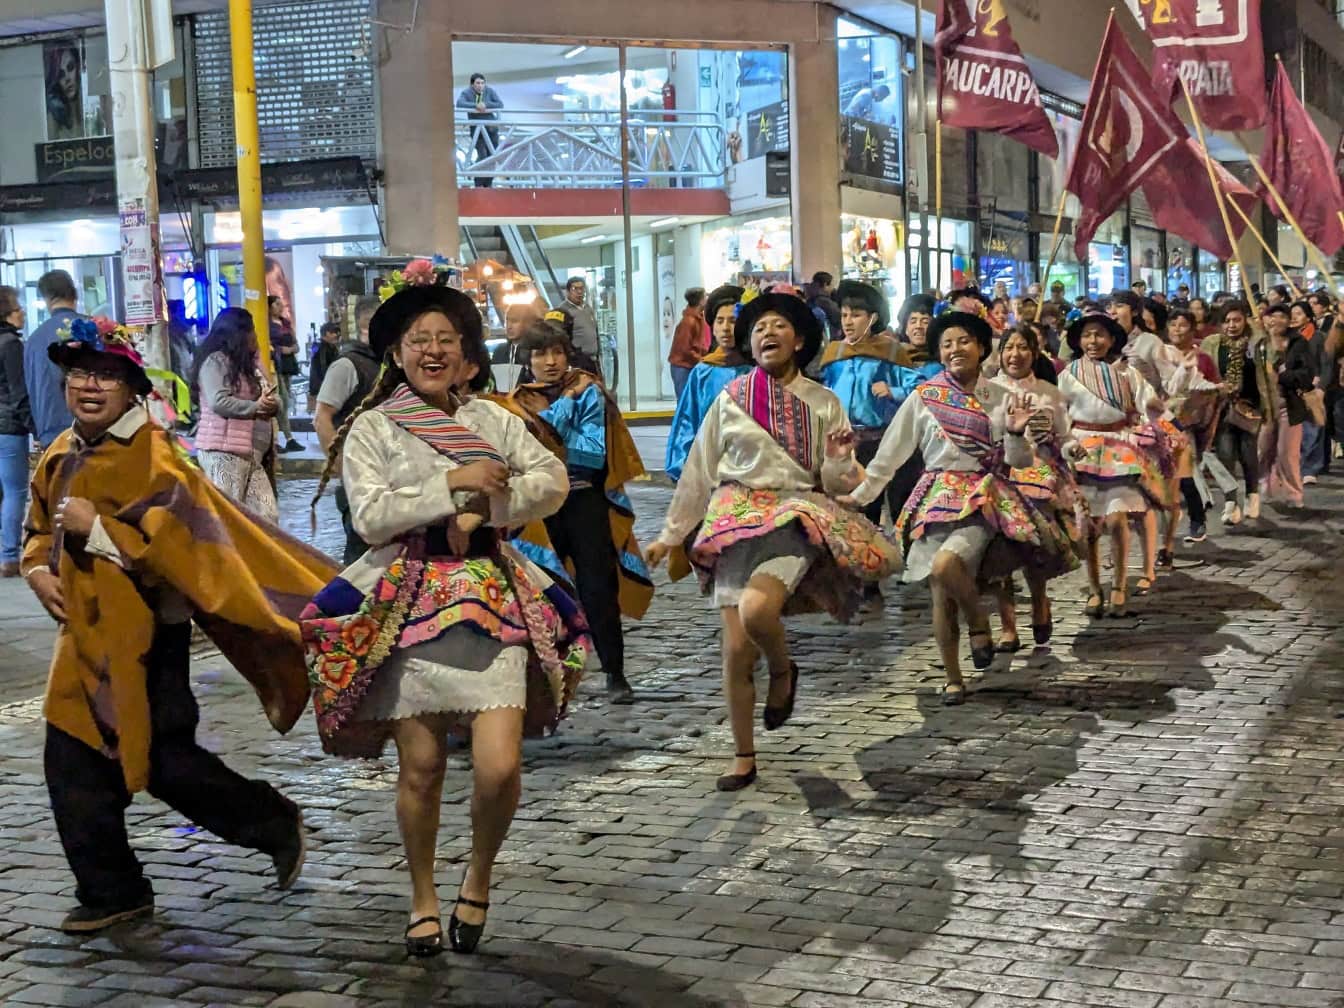 Άνθρωποι με παραδοσιακά περουβιανά λαϊκά ρούχα χορεύουν σε ένα δρόμο κατά τη διάρκεια φεστιβάλ δρόμου